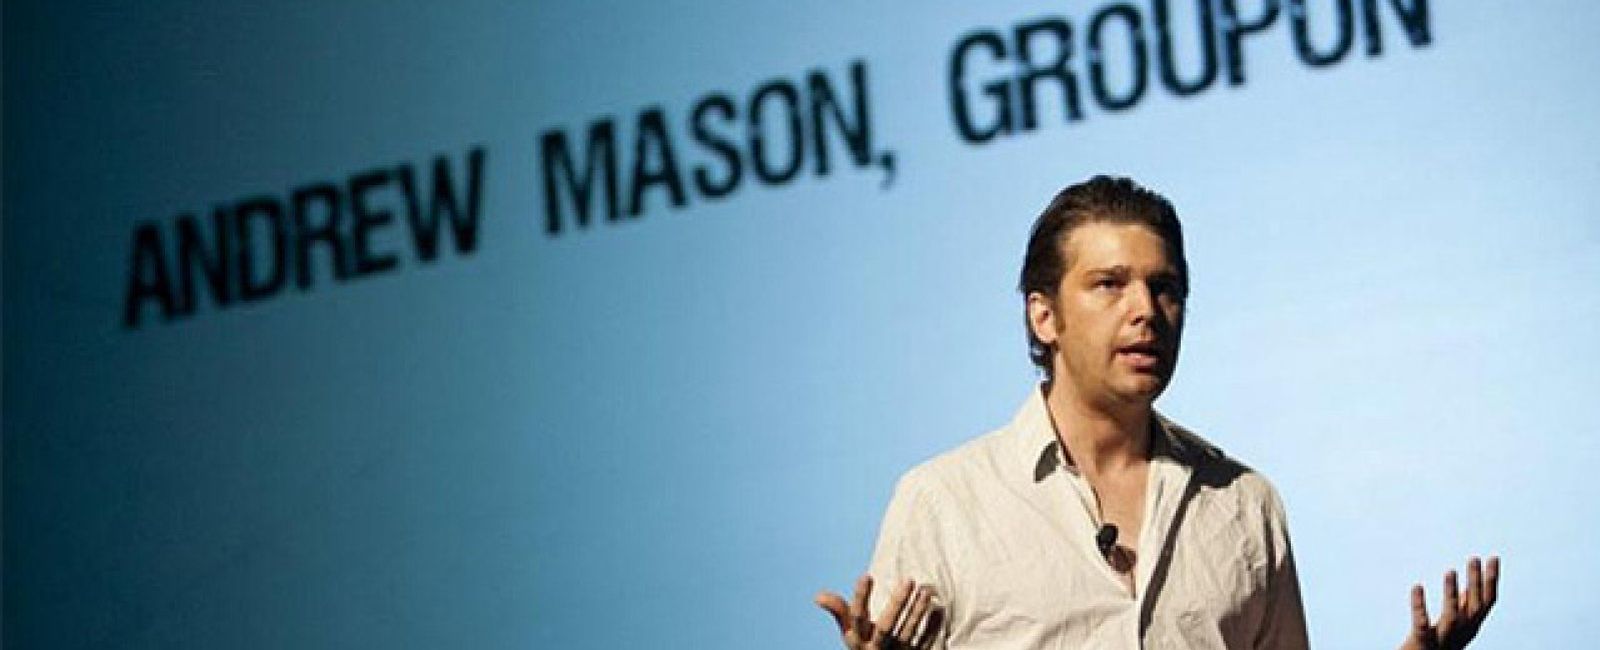 Foto: Groupon despide a su CEO y cofundador Andrew Mason